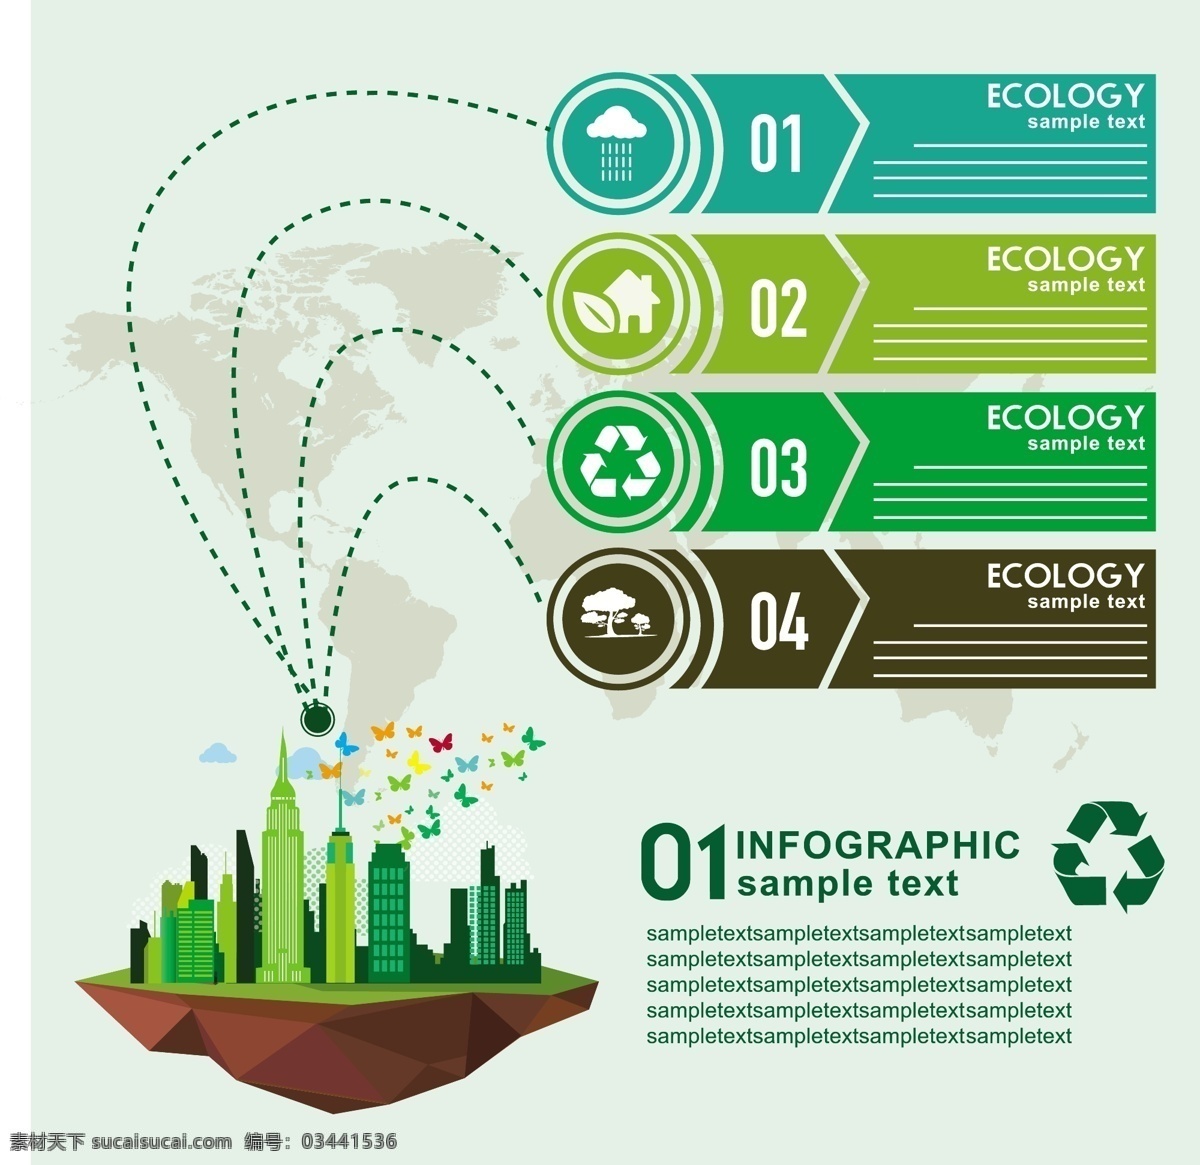 生态信息图表 环保 创意设计 eco 绿色 城市建筑 循环 能源 节能 低碳 生态 回收 环保标志 ppt素材 底纹背景 矢量 商务金融 商业插画 白色